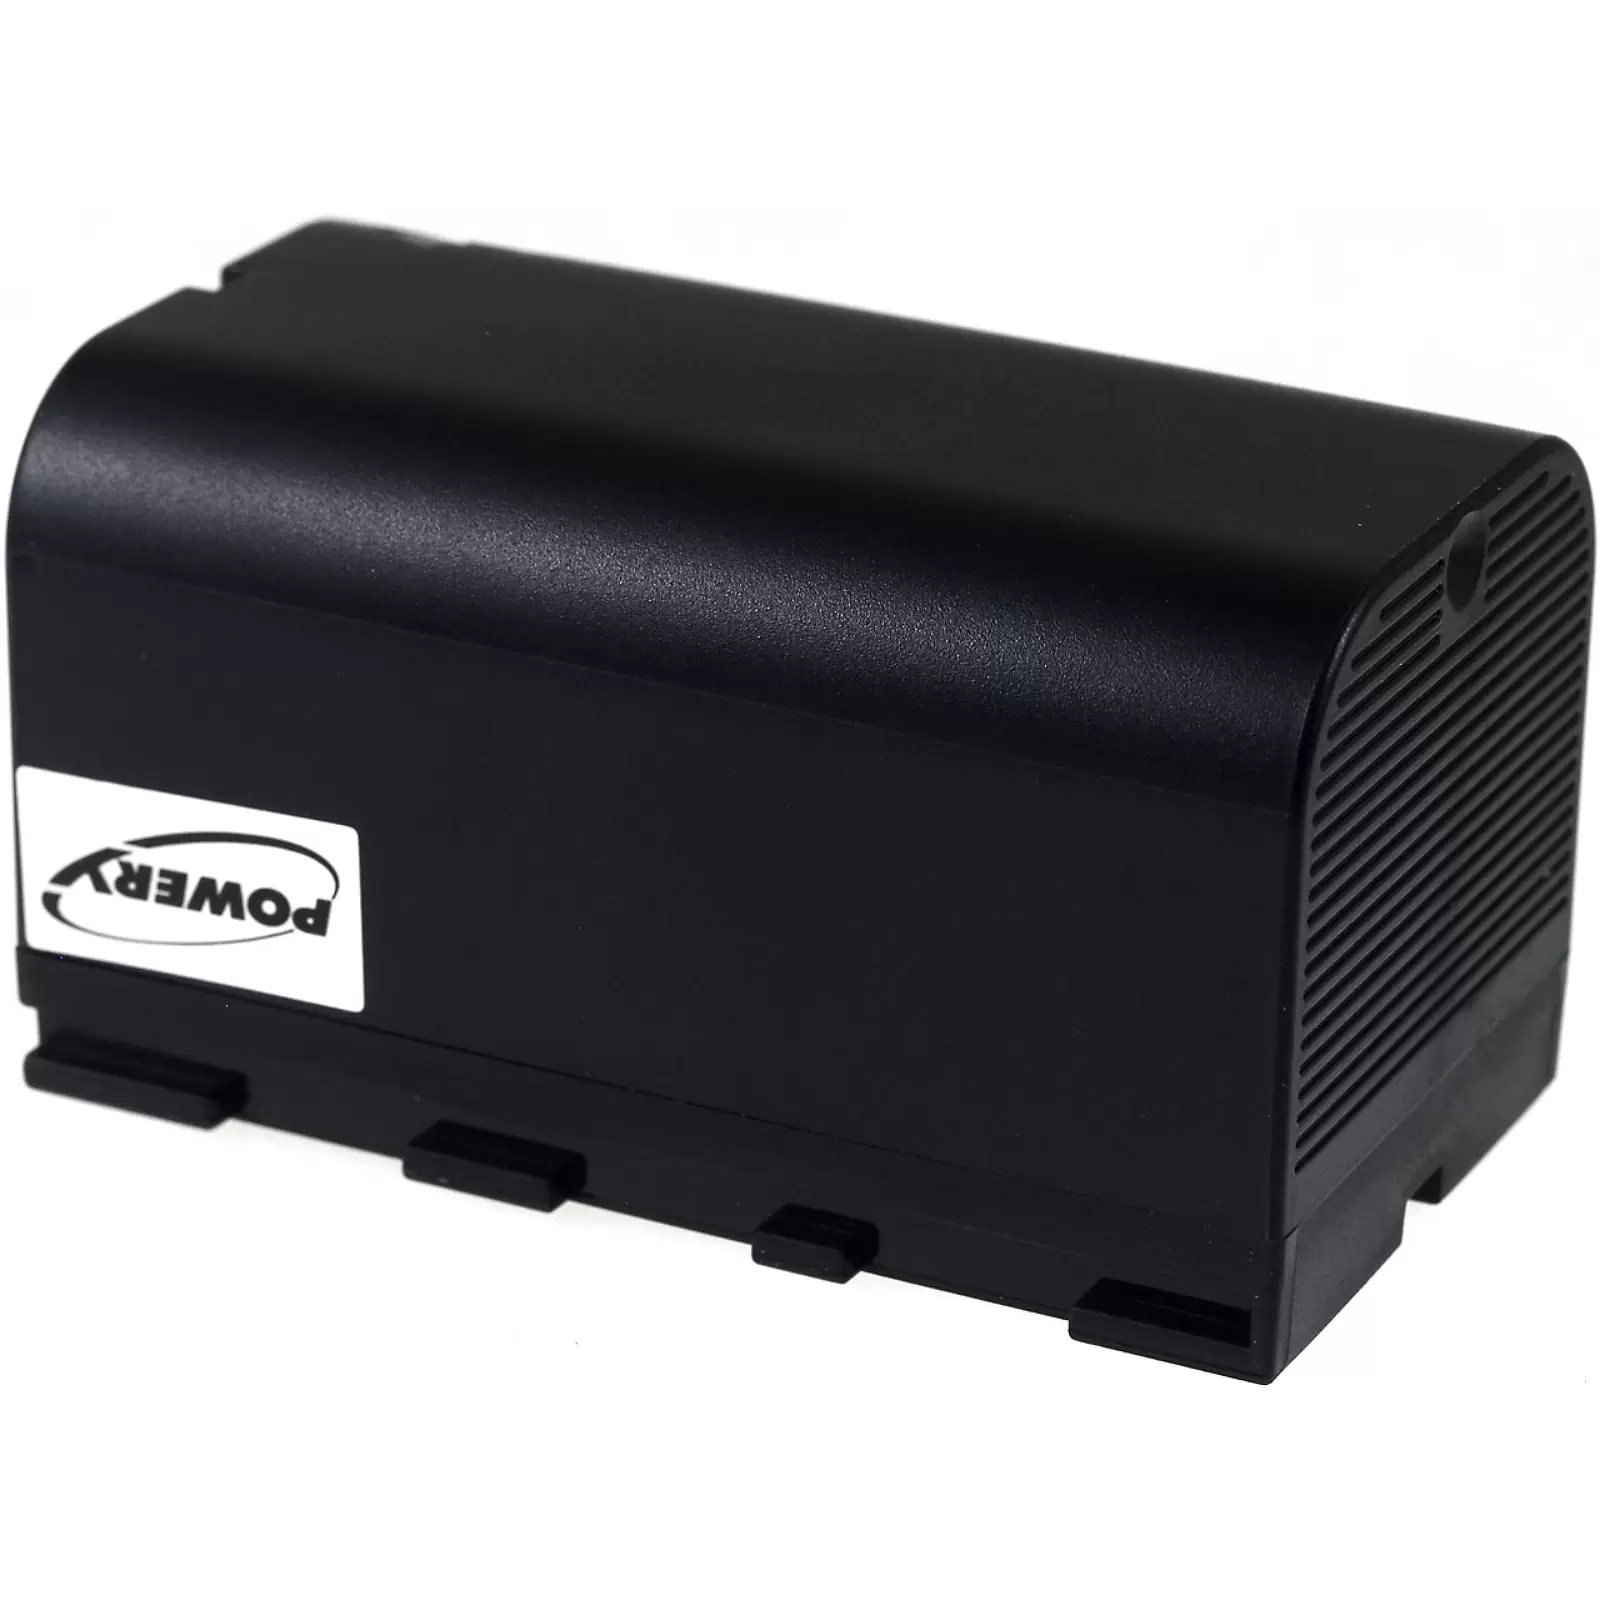 Powerakku für Multimeter Leica RX1200/ Typ GEB211